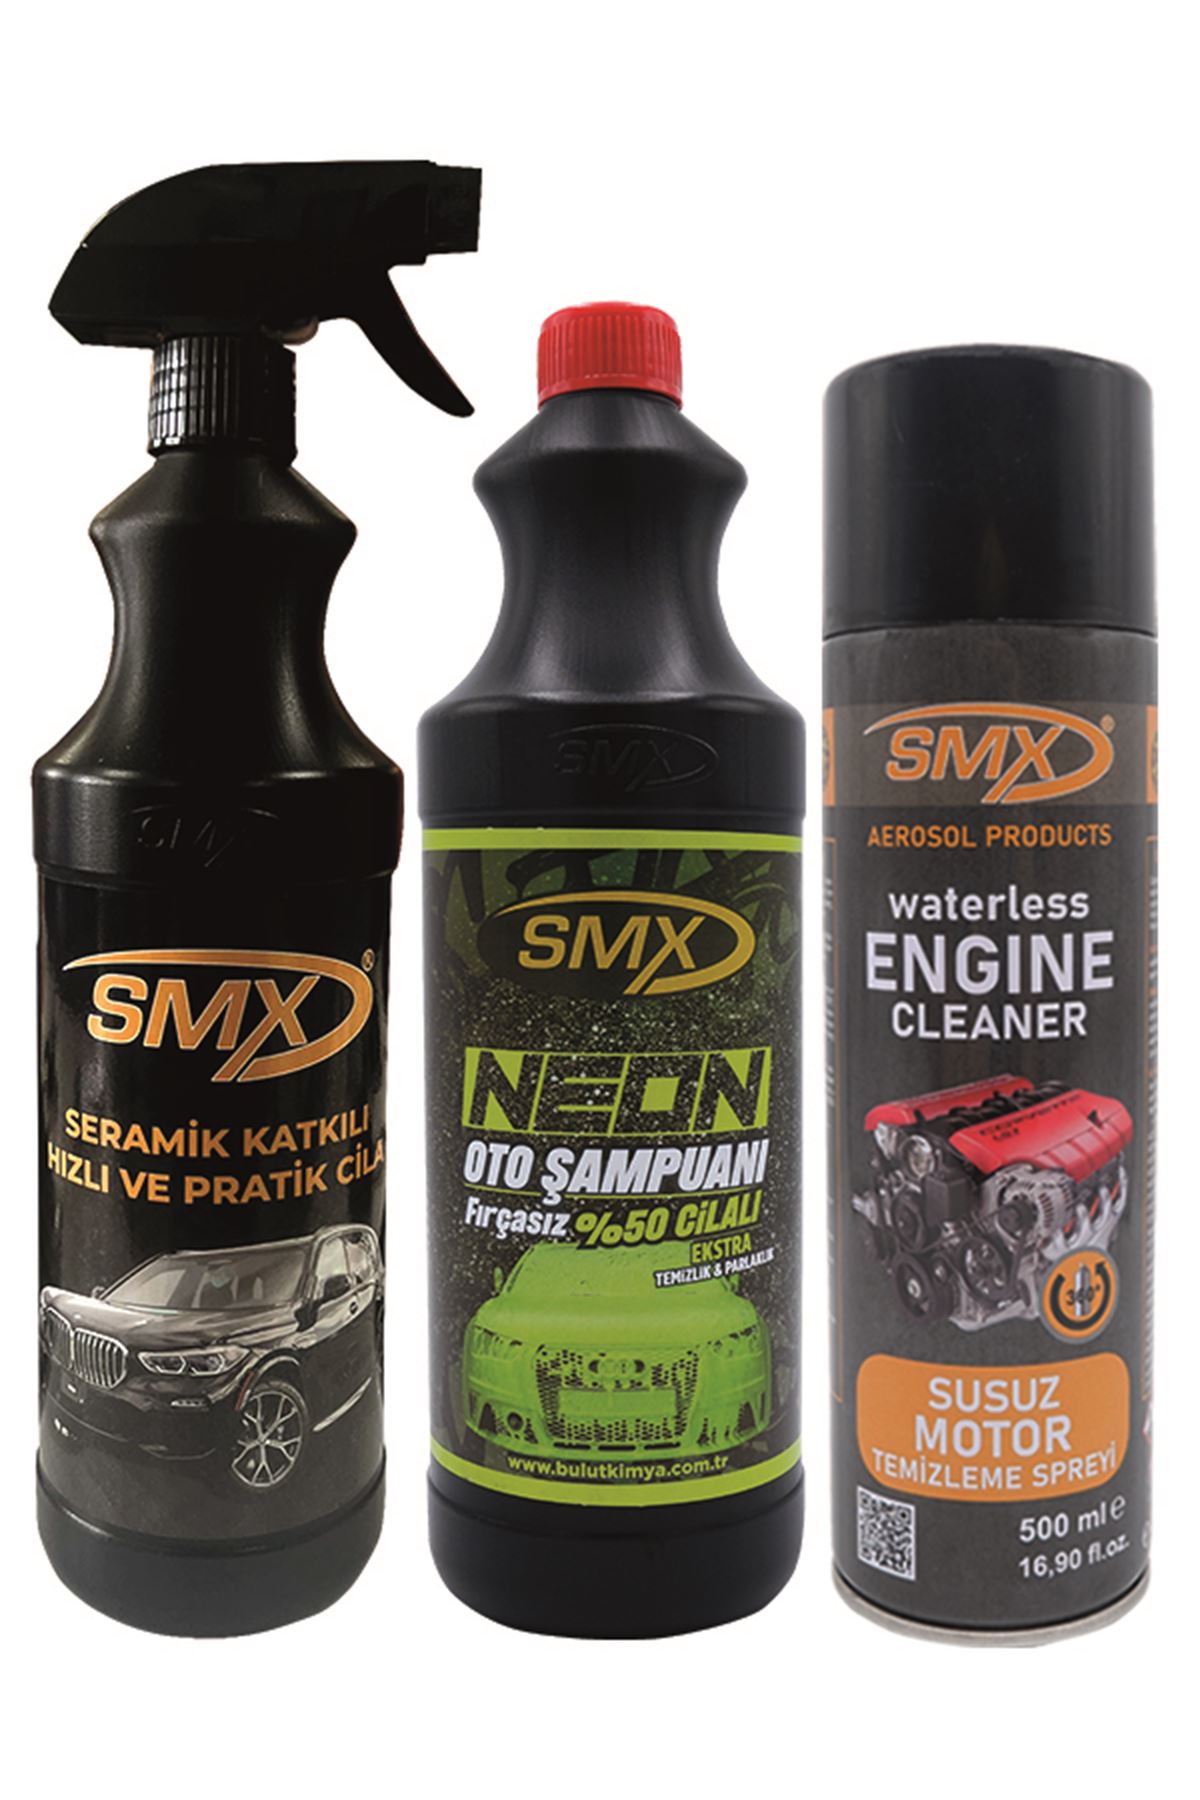 Susuz Motor Temizleme  Spreyi + Seramik Katkılı Hızlı ve Pratik Cila + Neon %50 Cilalı Fırçasız Oto Şampuanı 